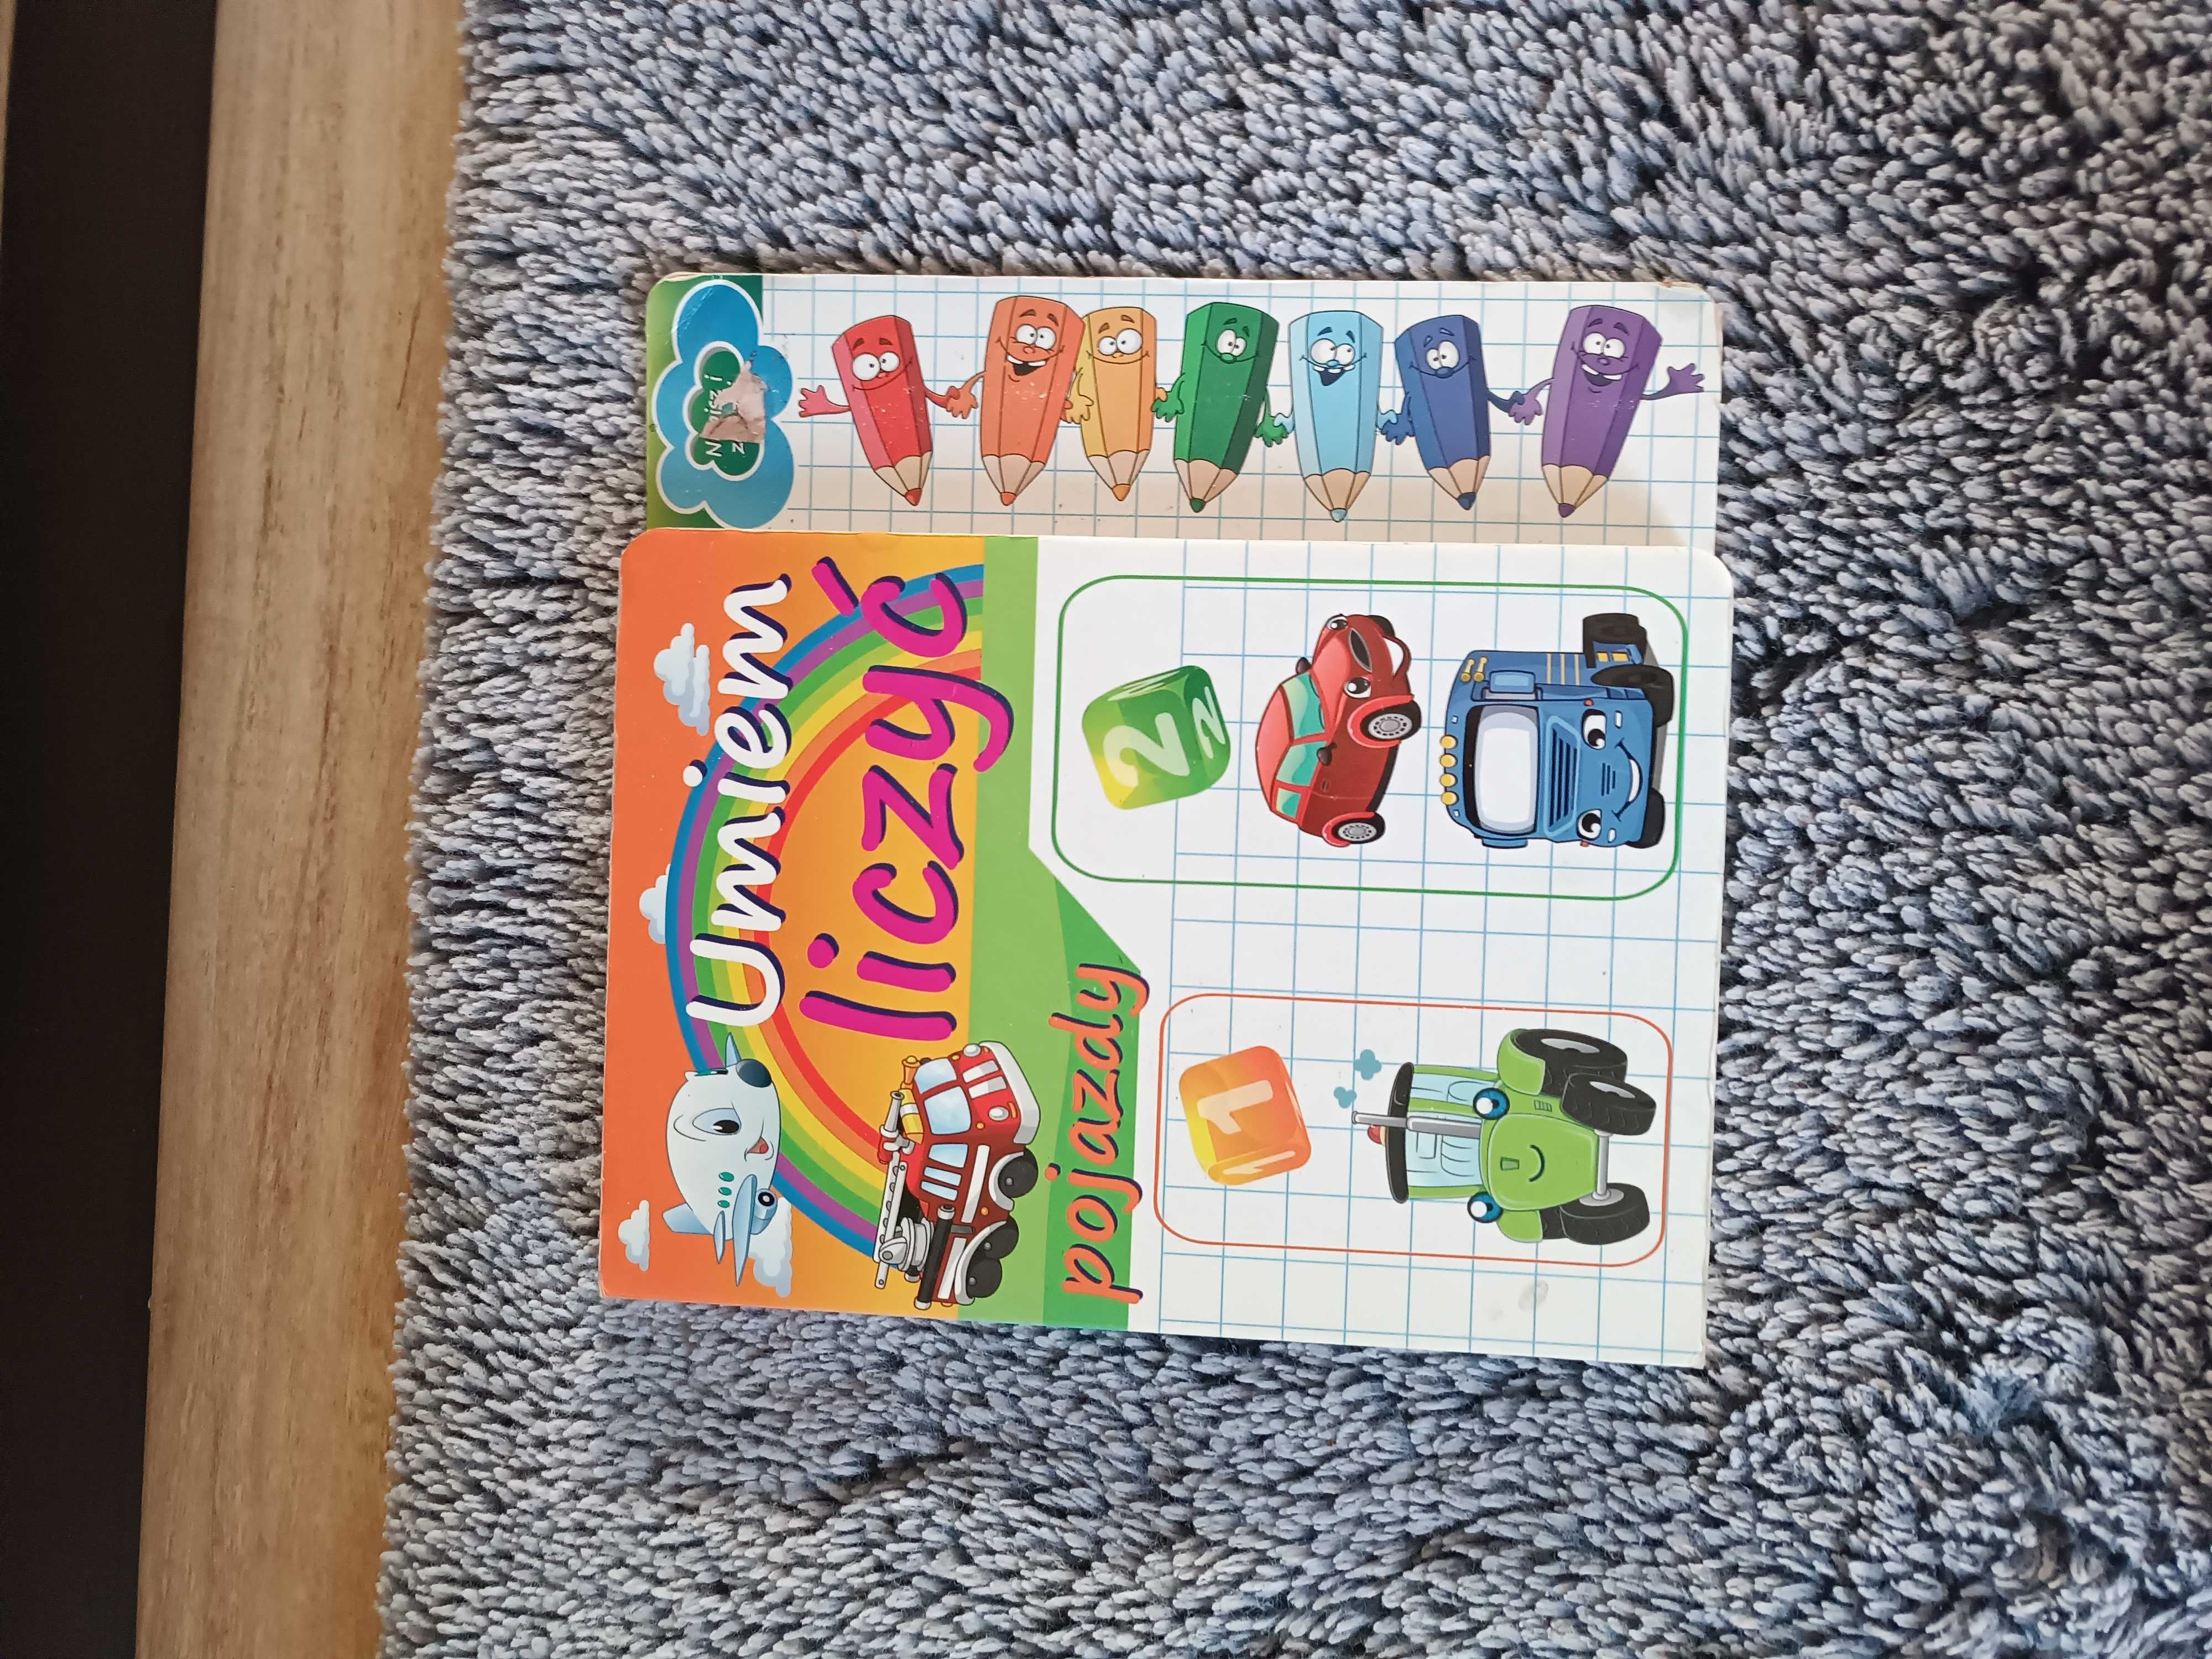 Gry i puzzle dla dzieci